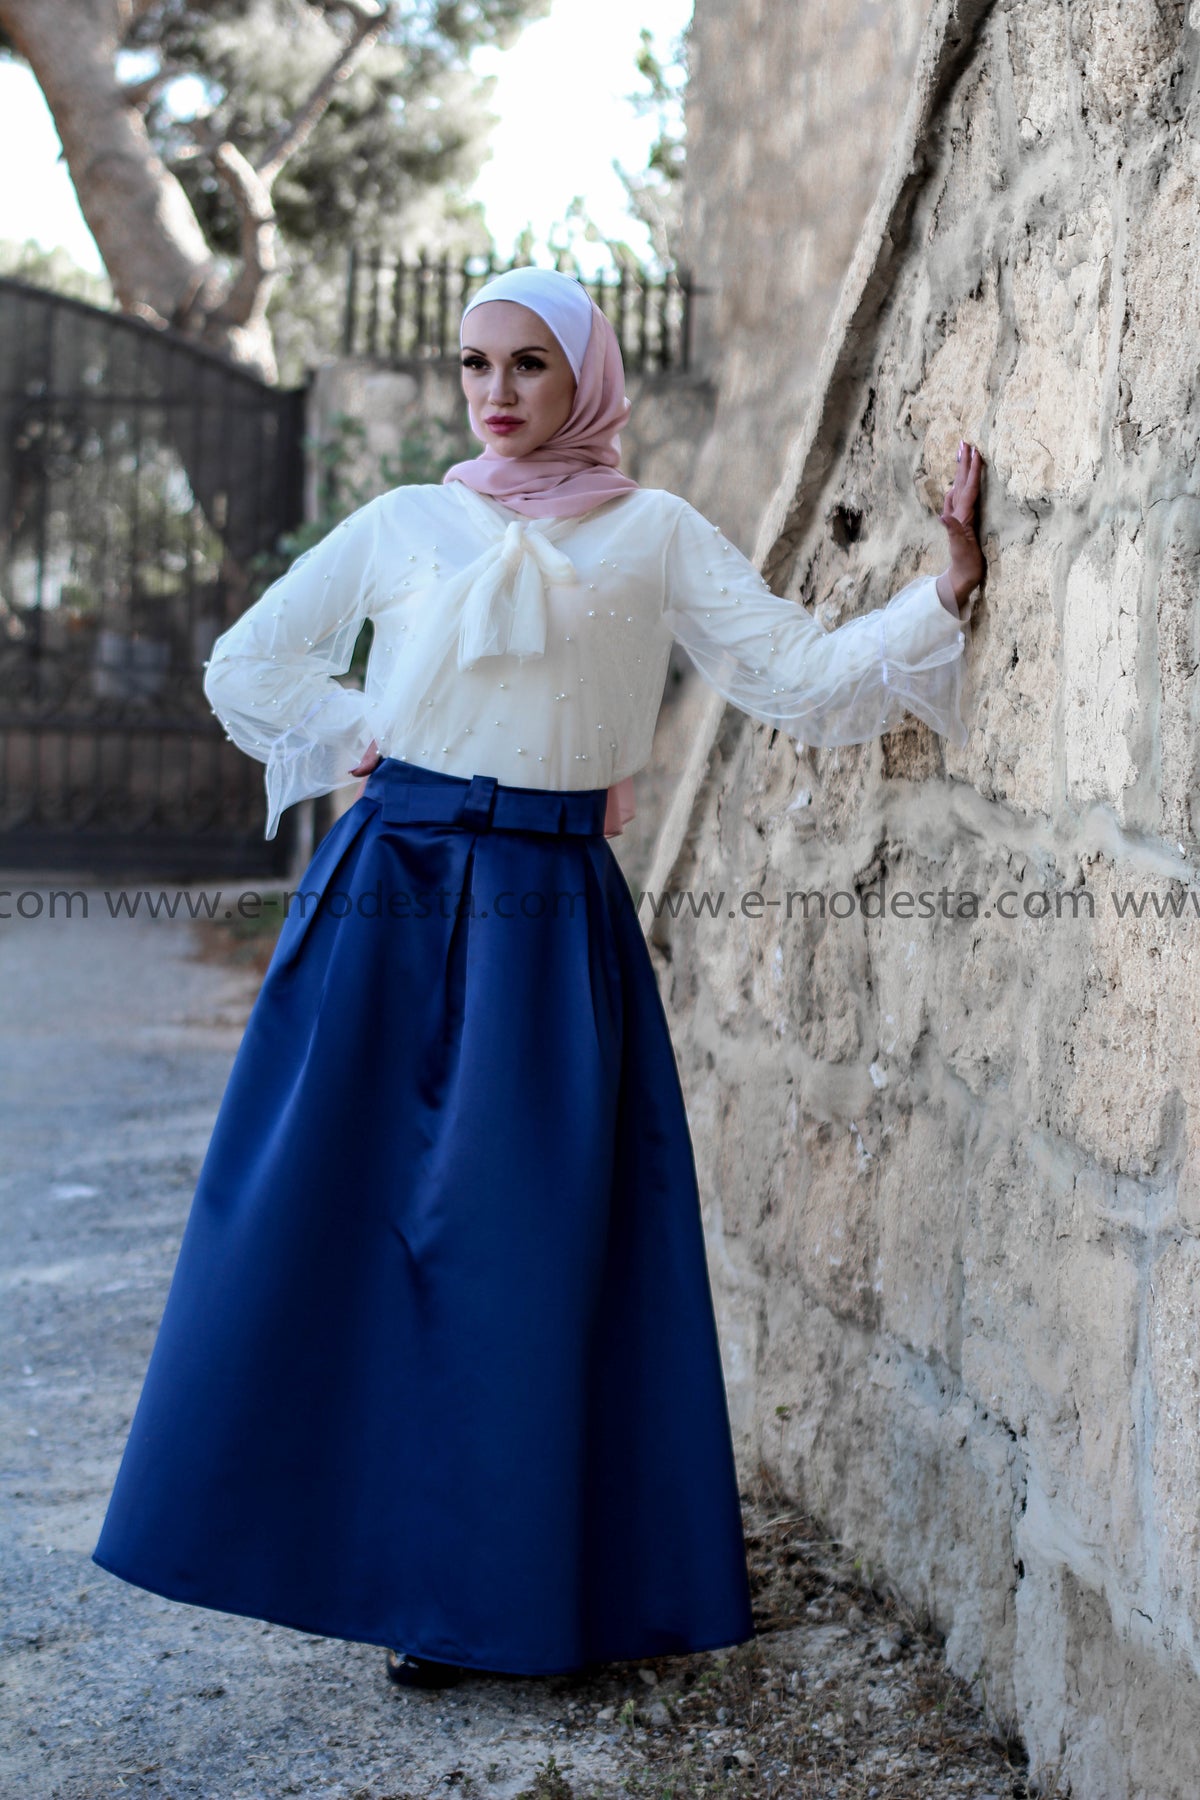 SALE Color Long High Waist Modest Maxi Skirt - Soft Satin - E-Modesta